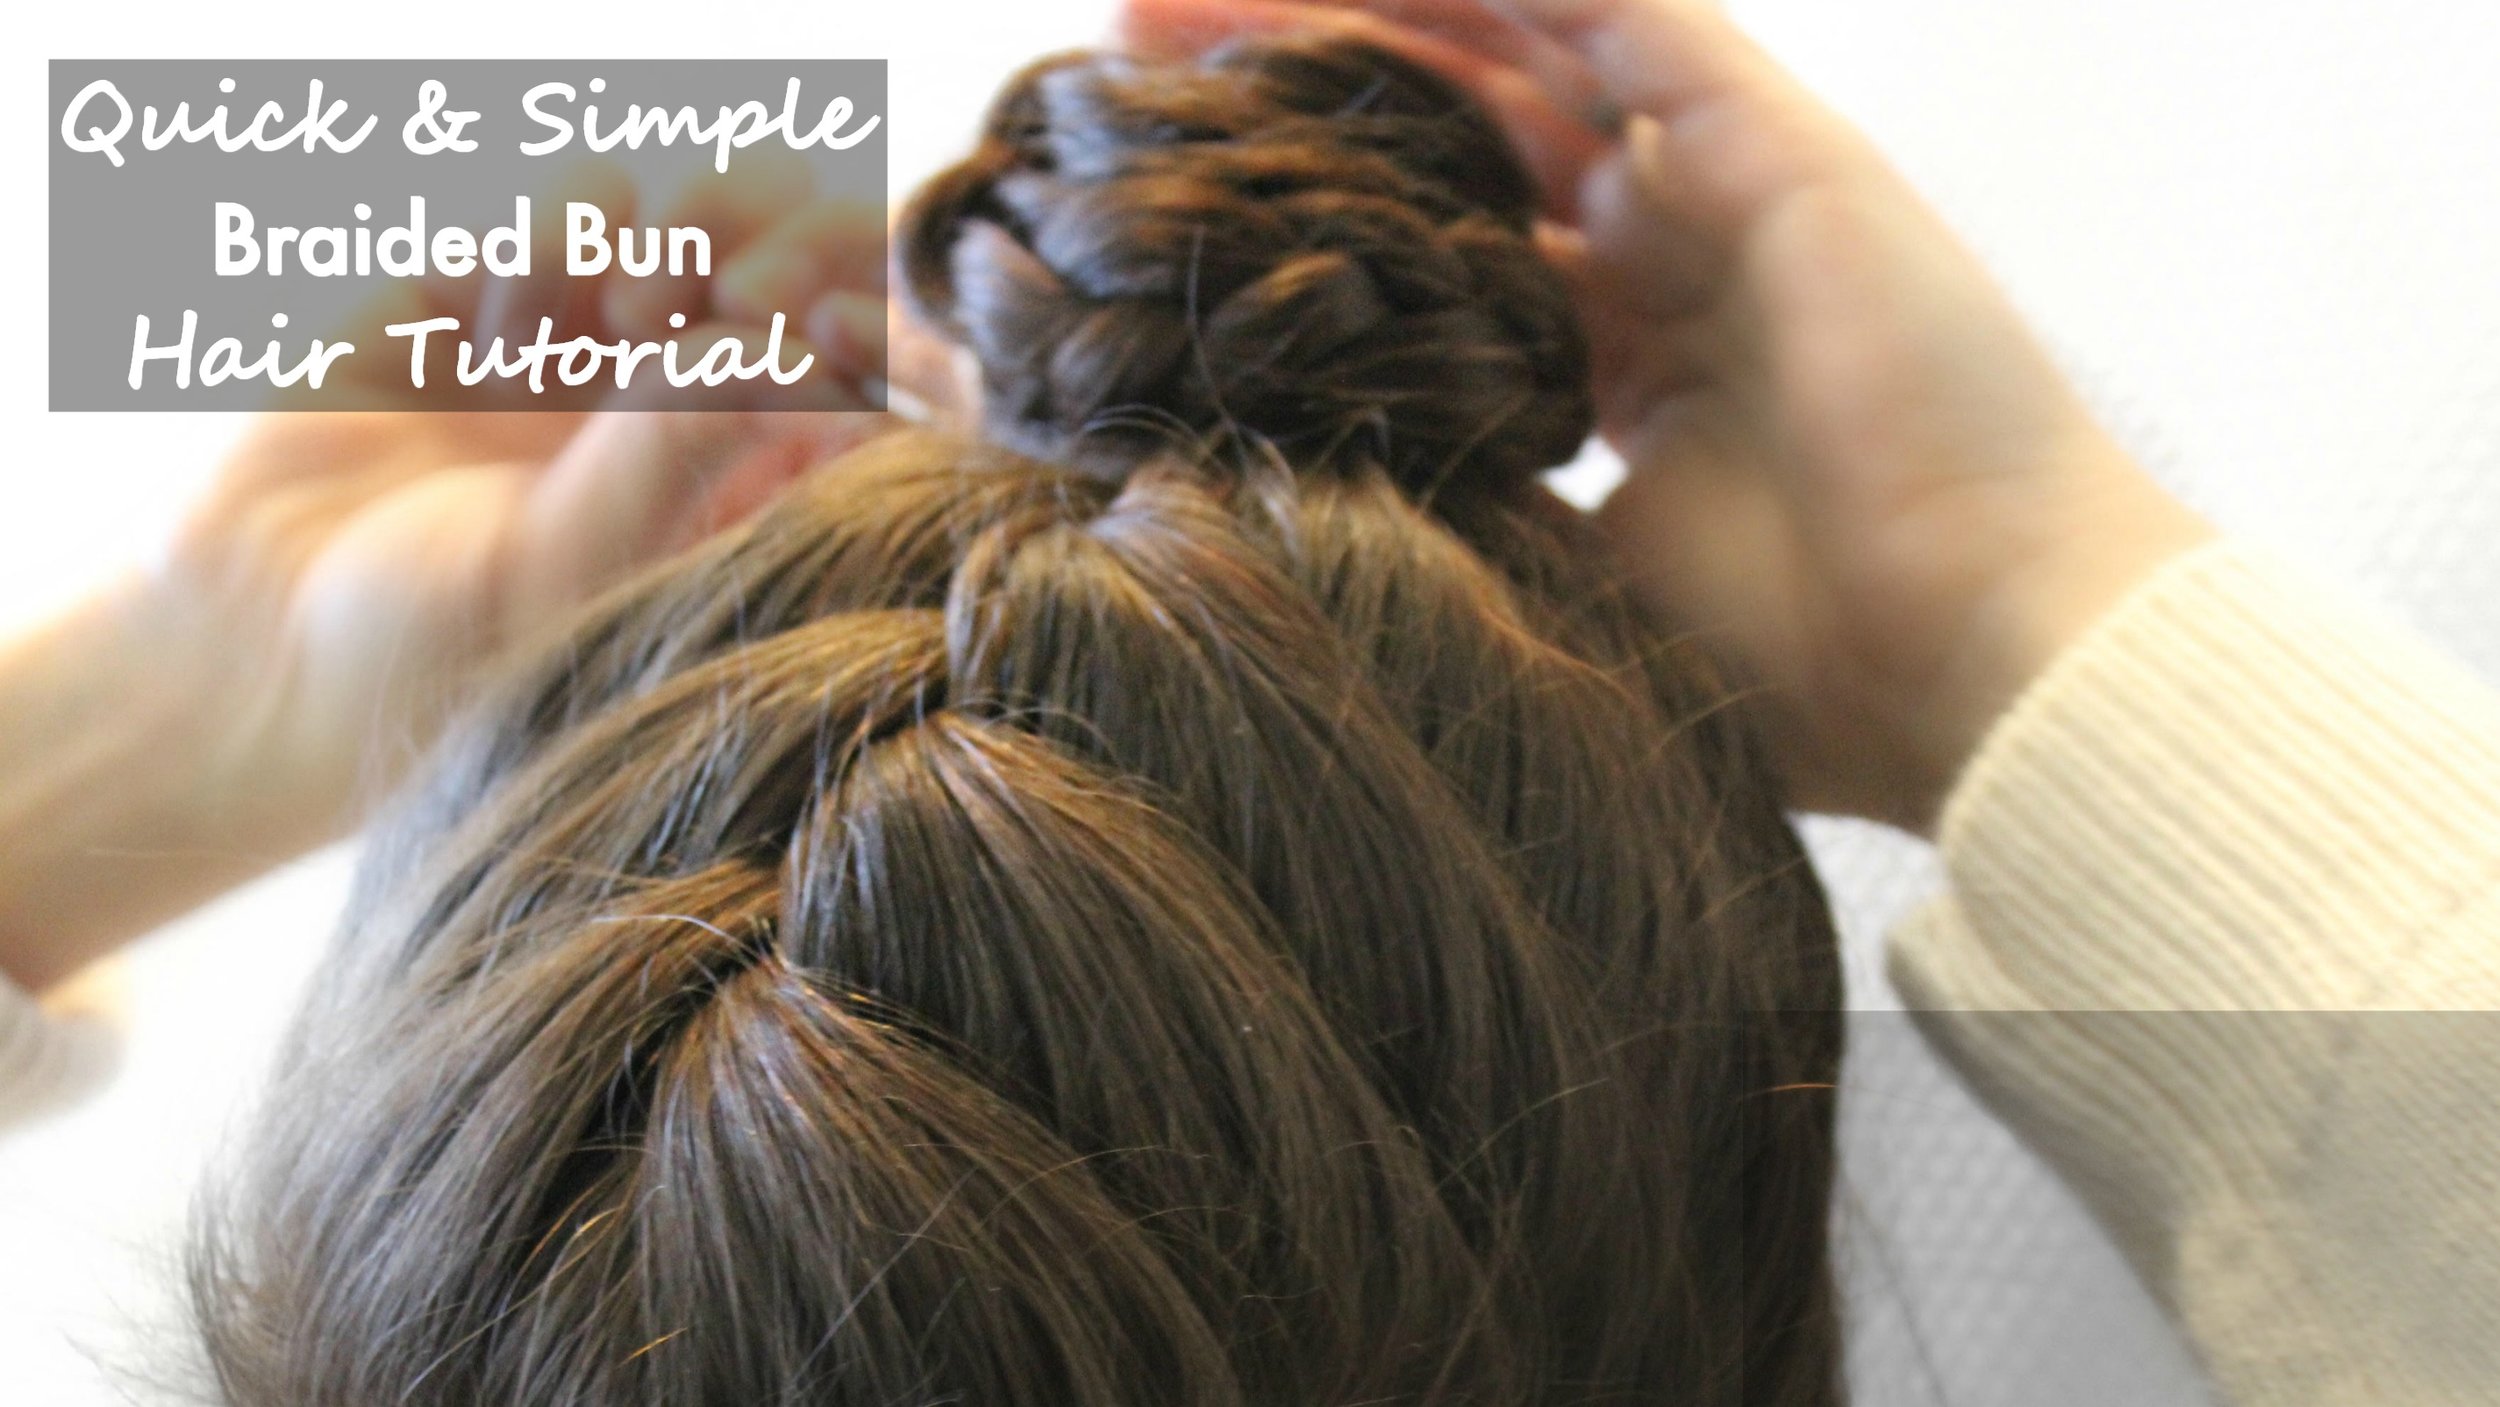 Braided bun hair tutorial